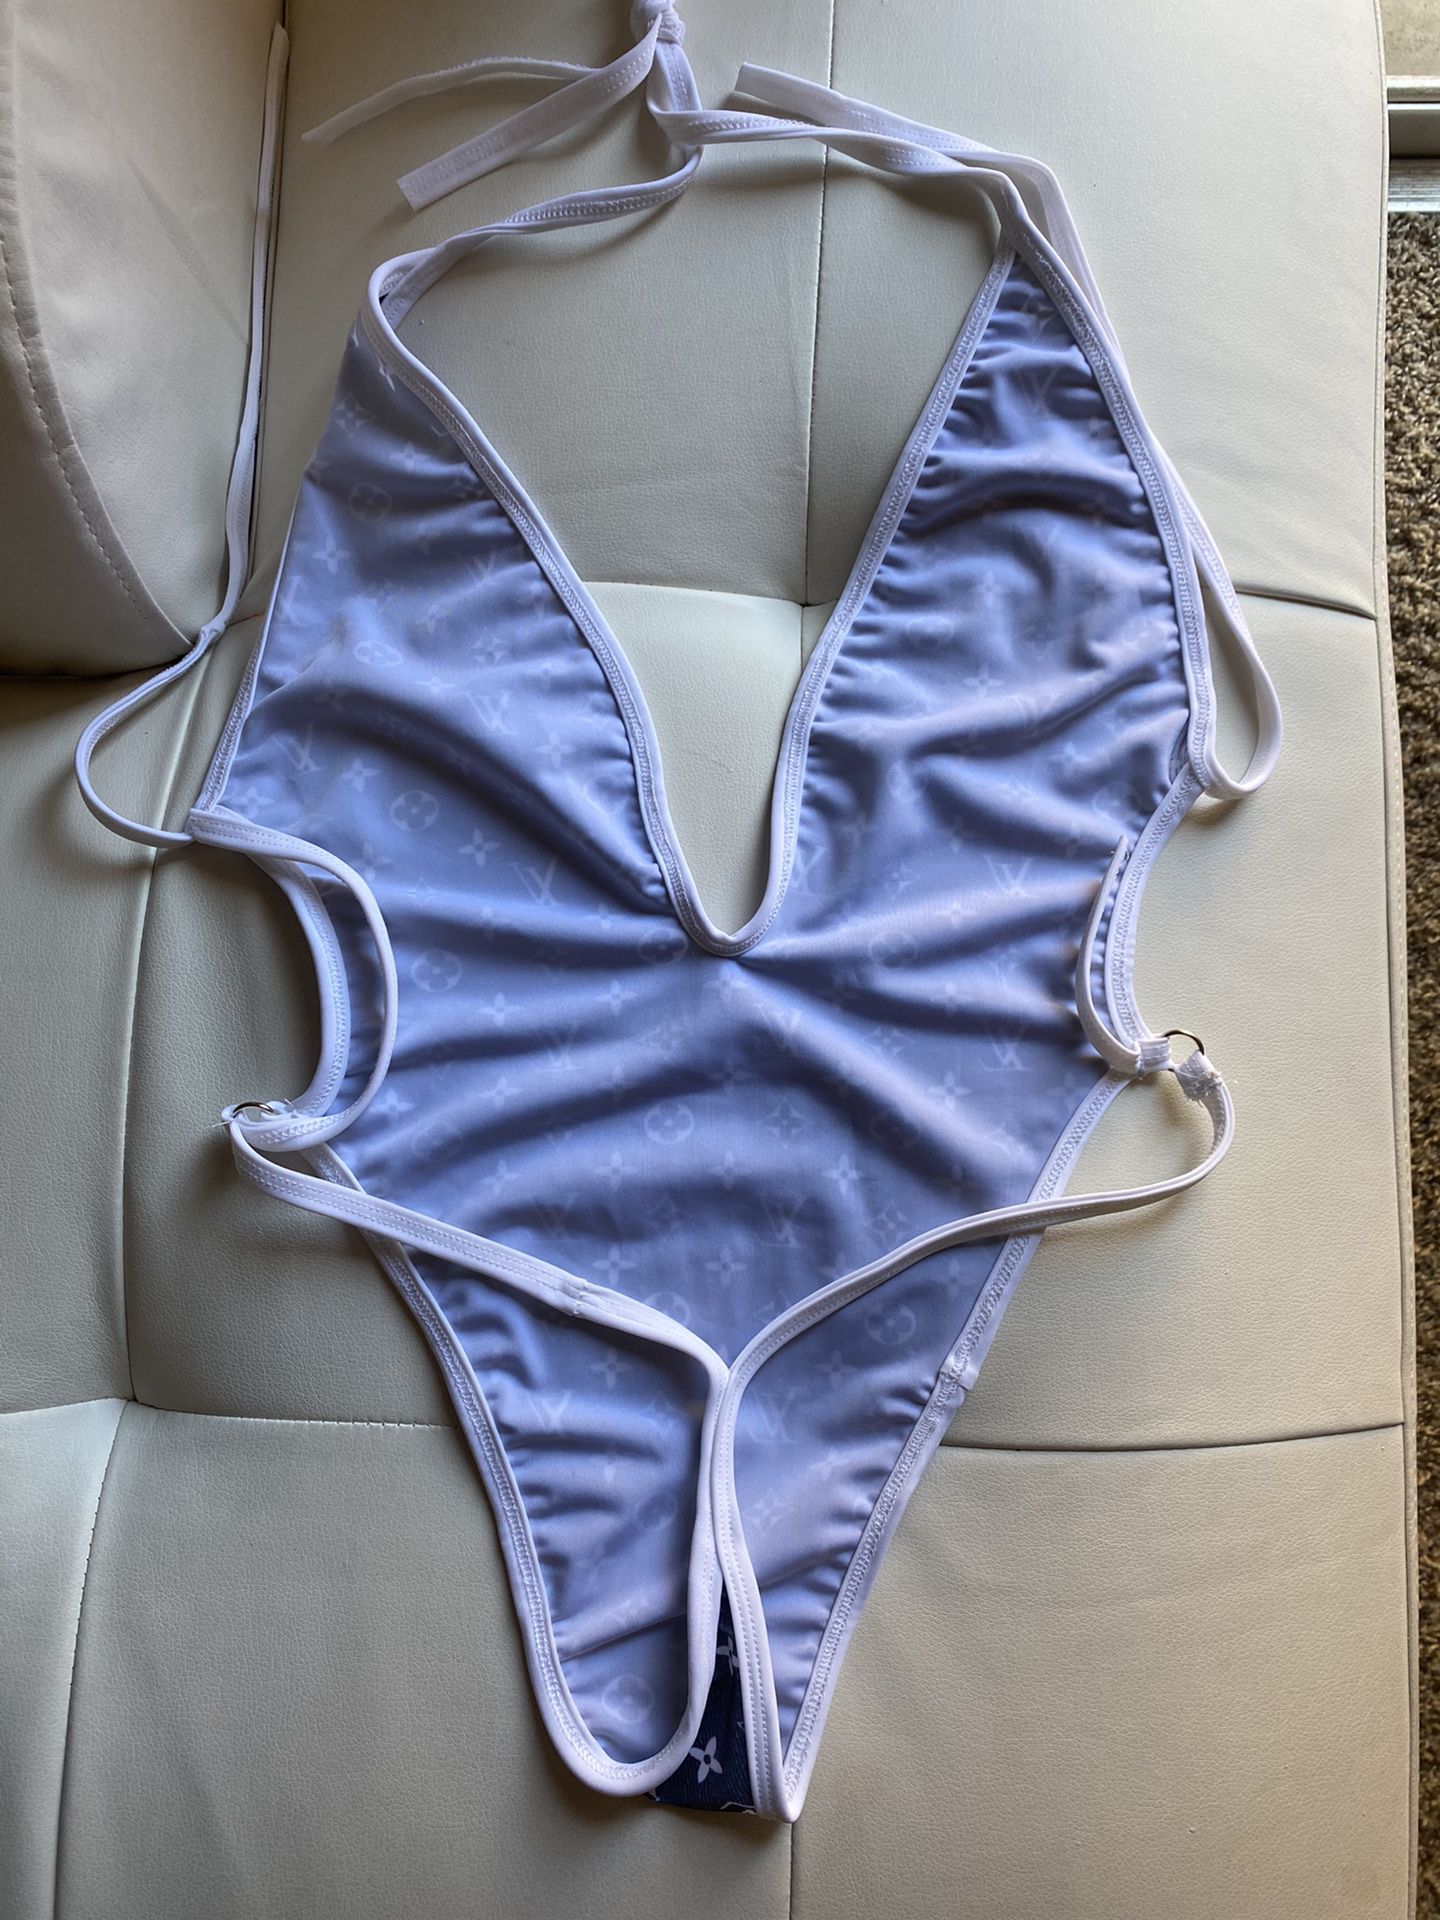 Blue&white Louis Vuitton bathing suit - Depop